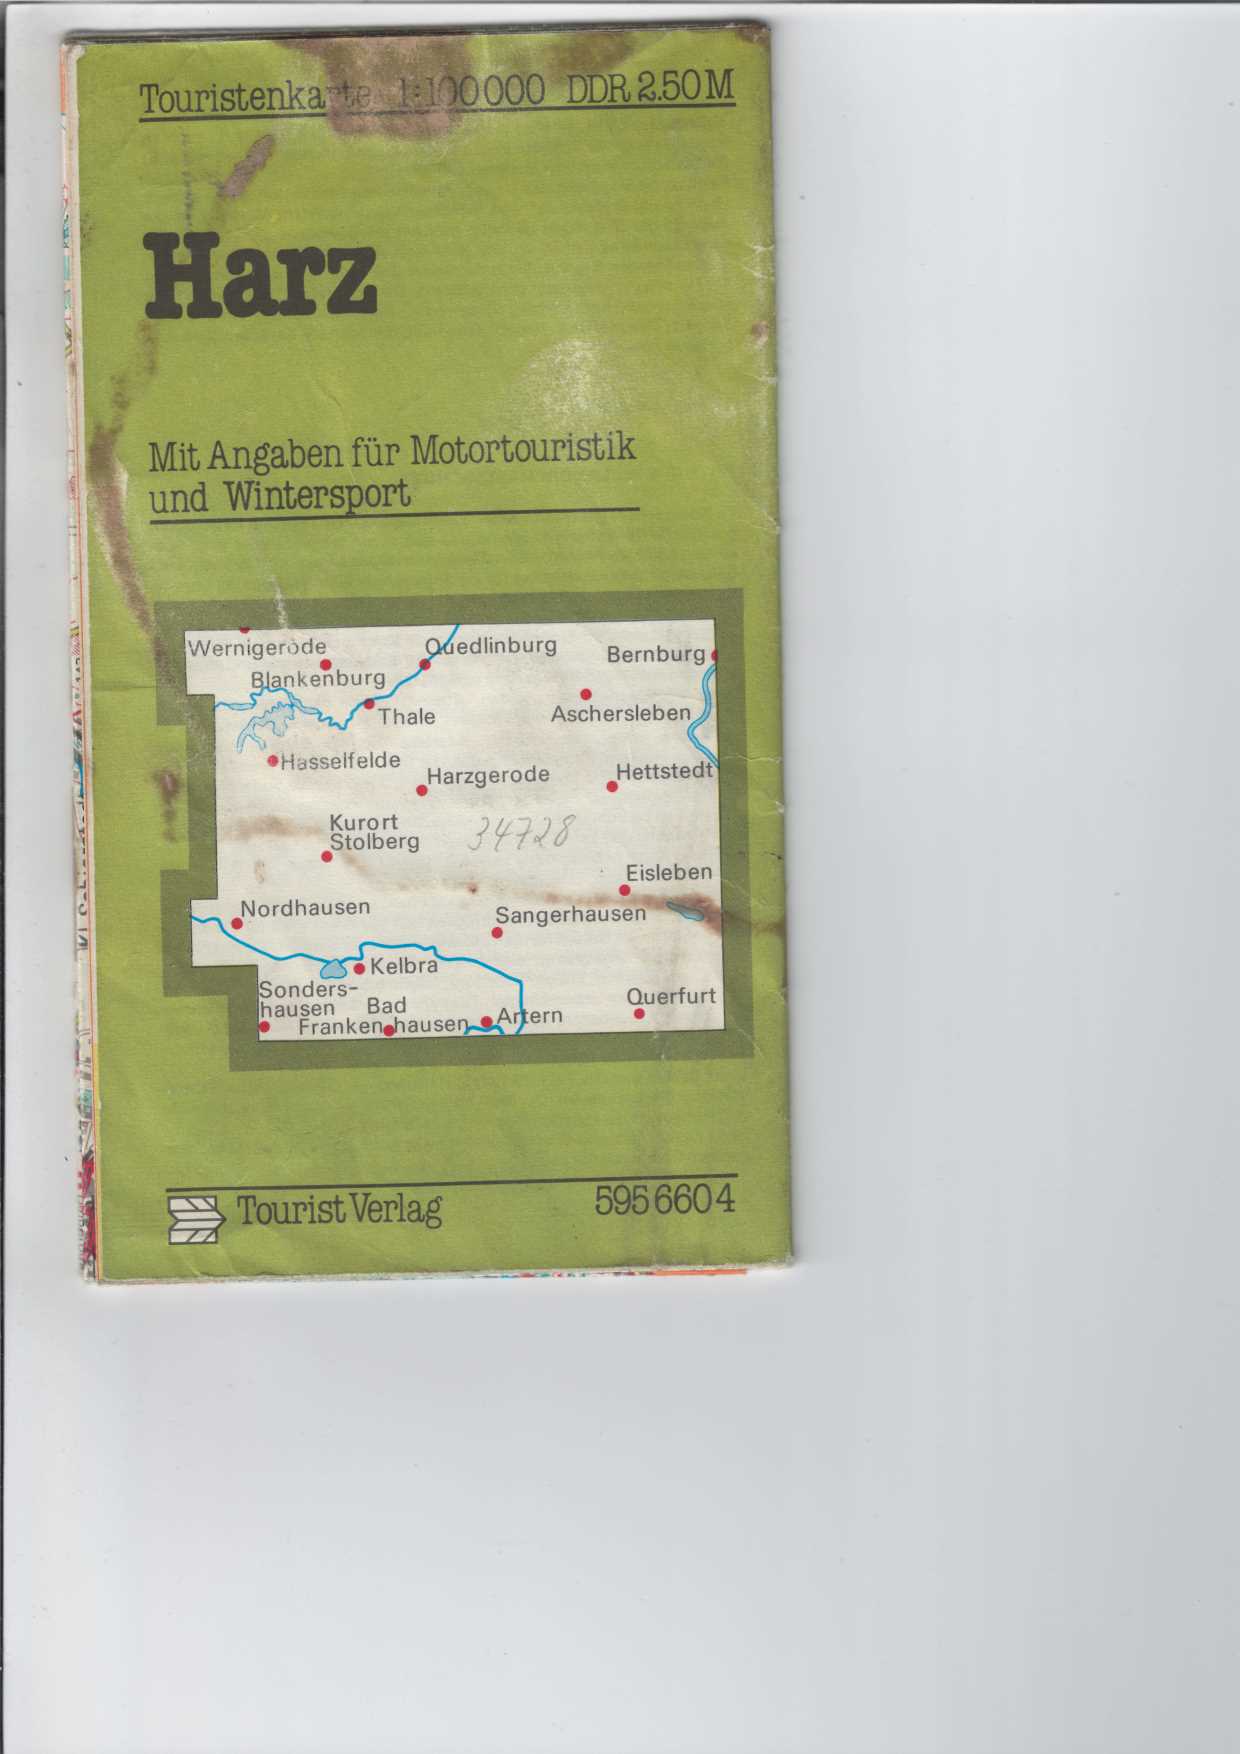   Touristenkarte Harz. 